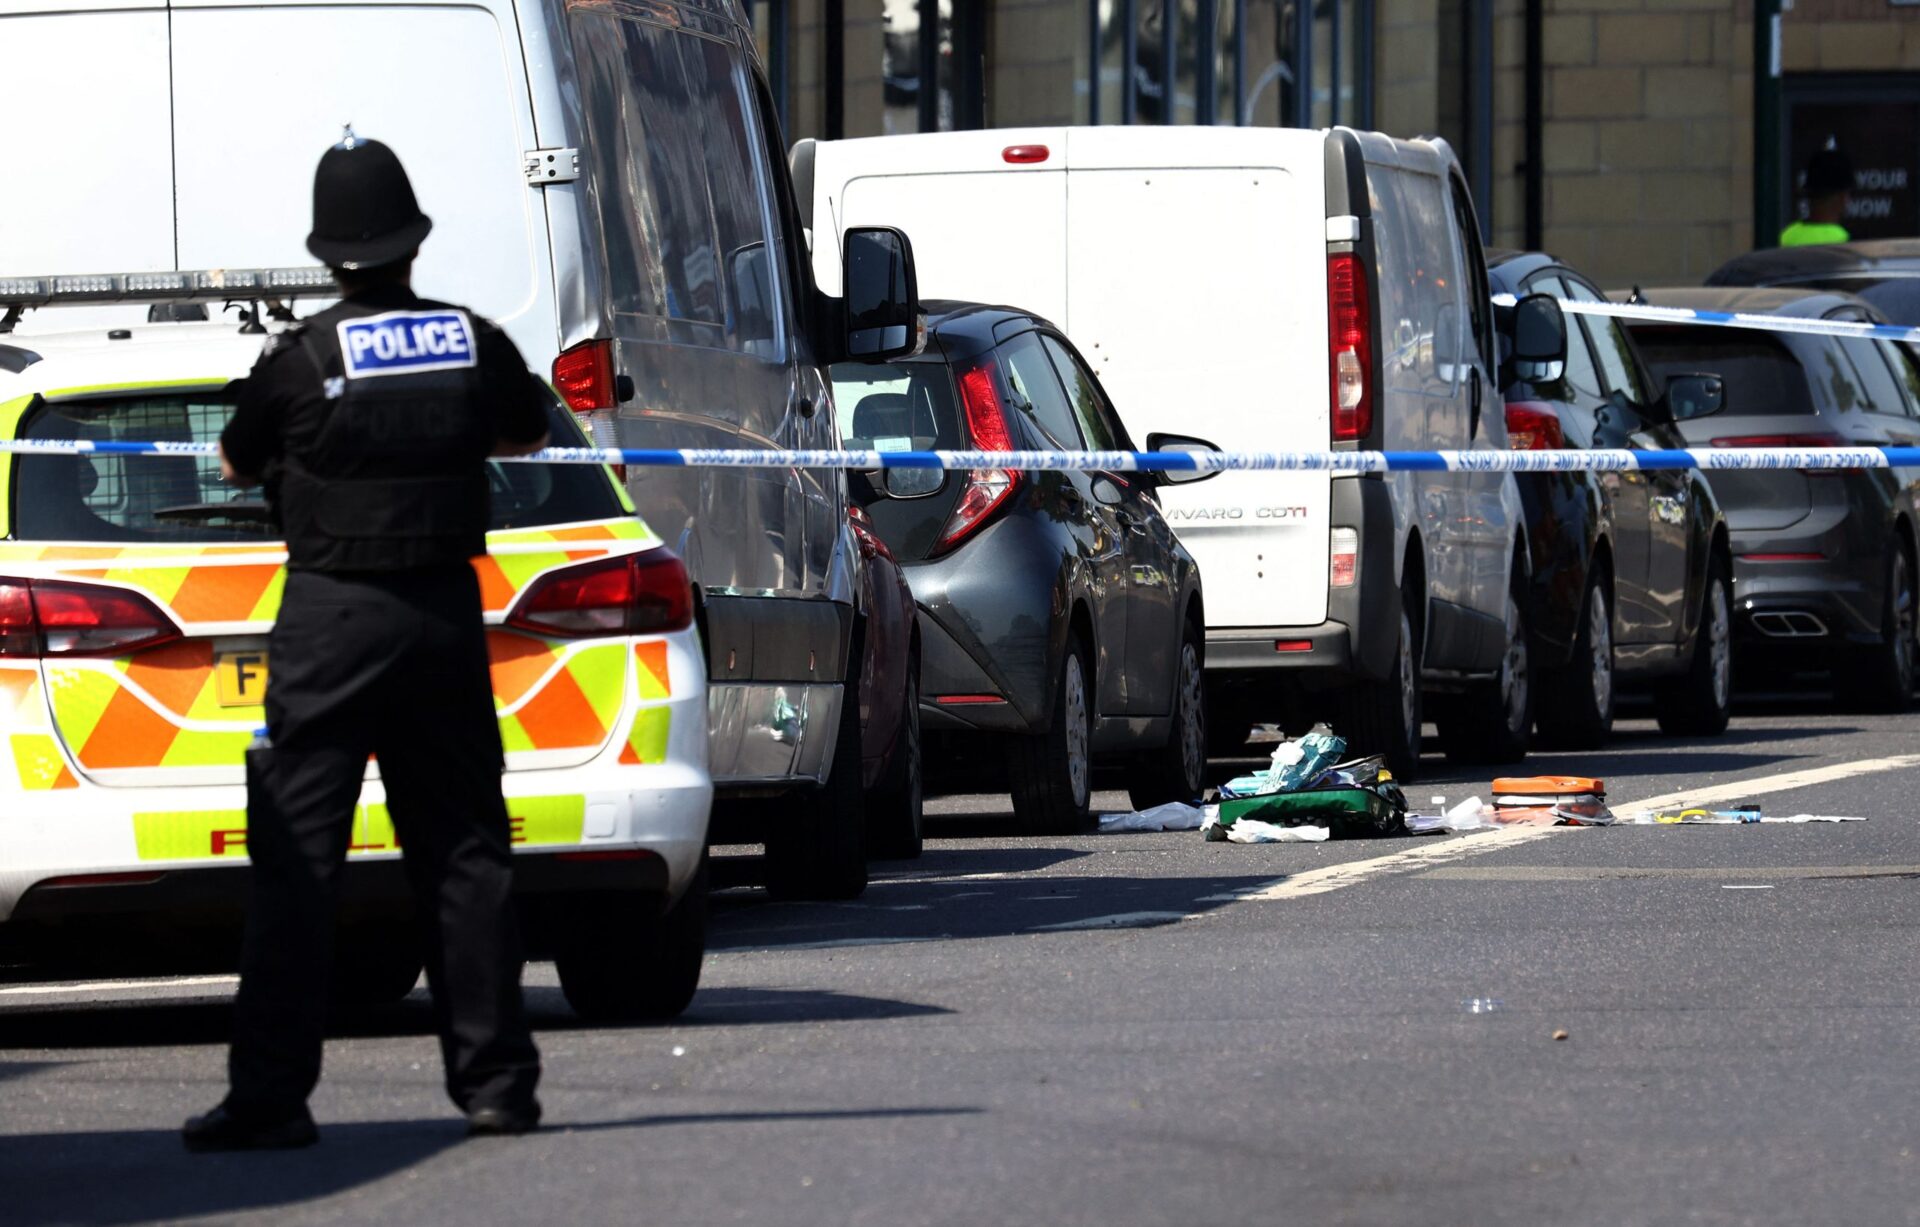 Suspeito de ataque com três mortos em Nottingham tem nacionalidade portuguesa